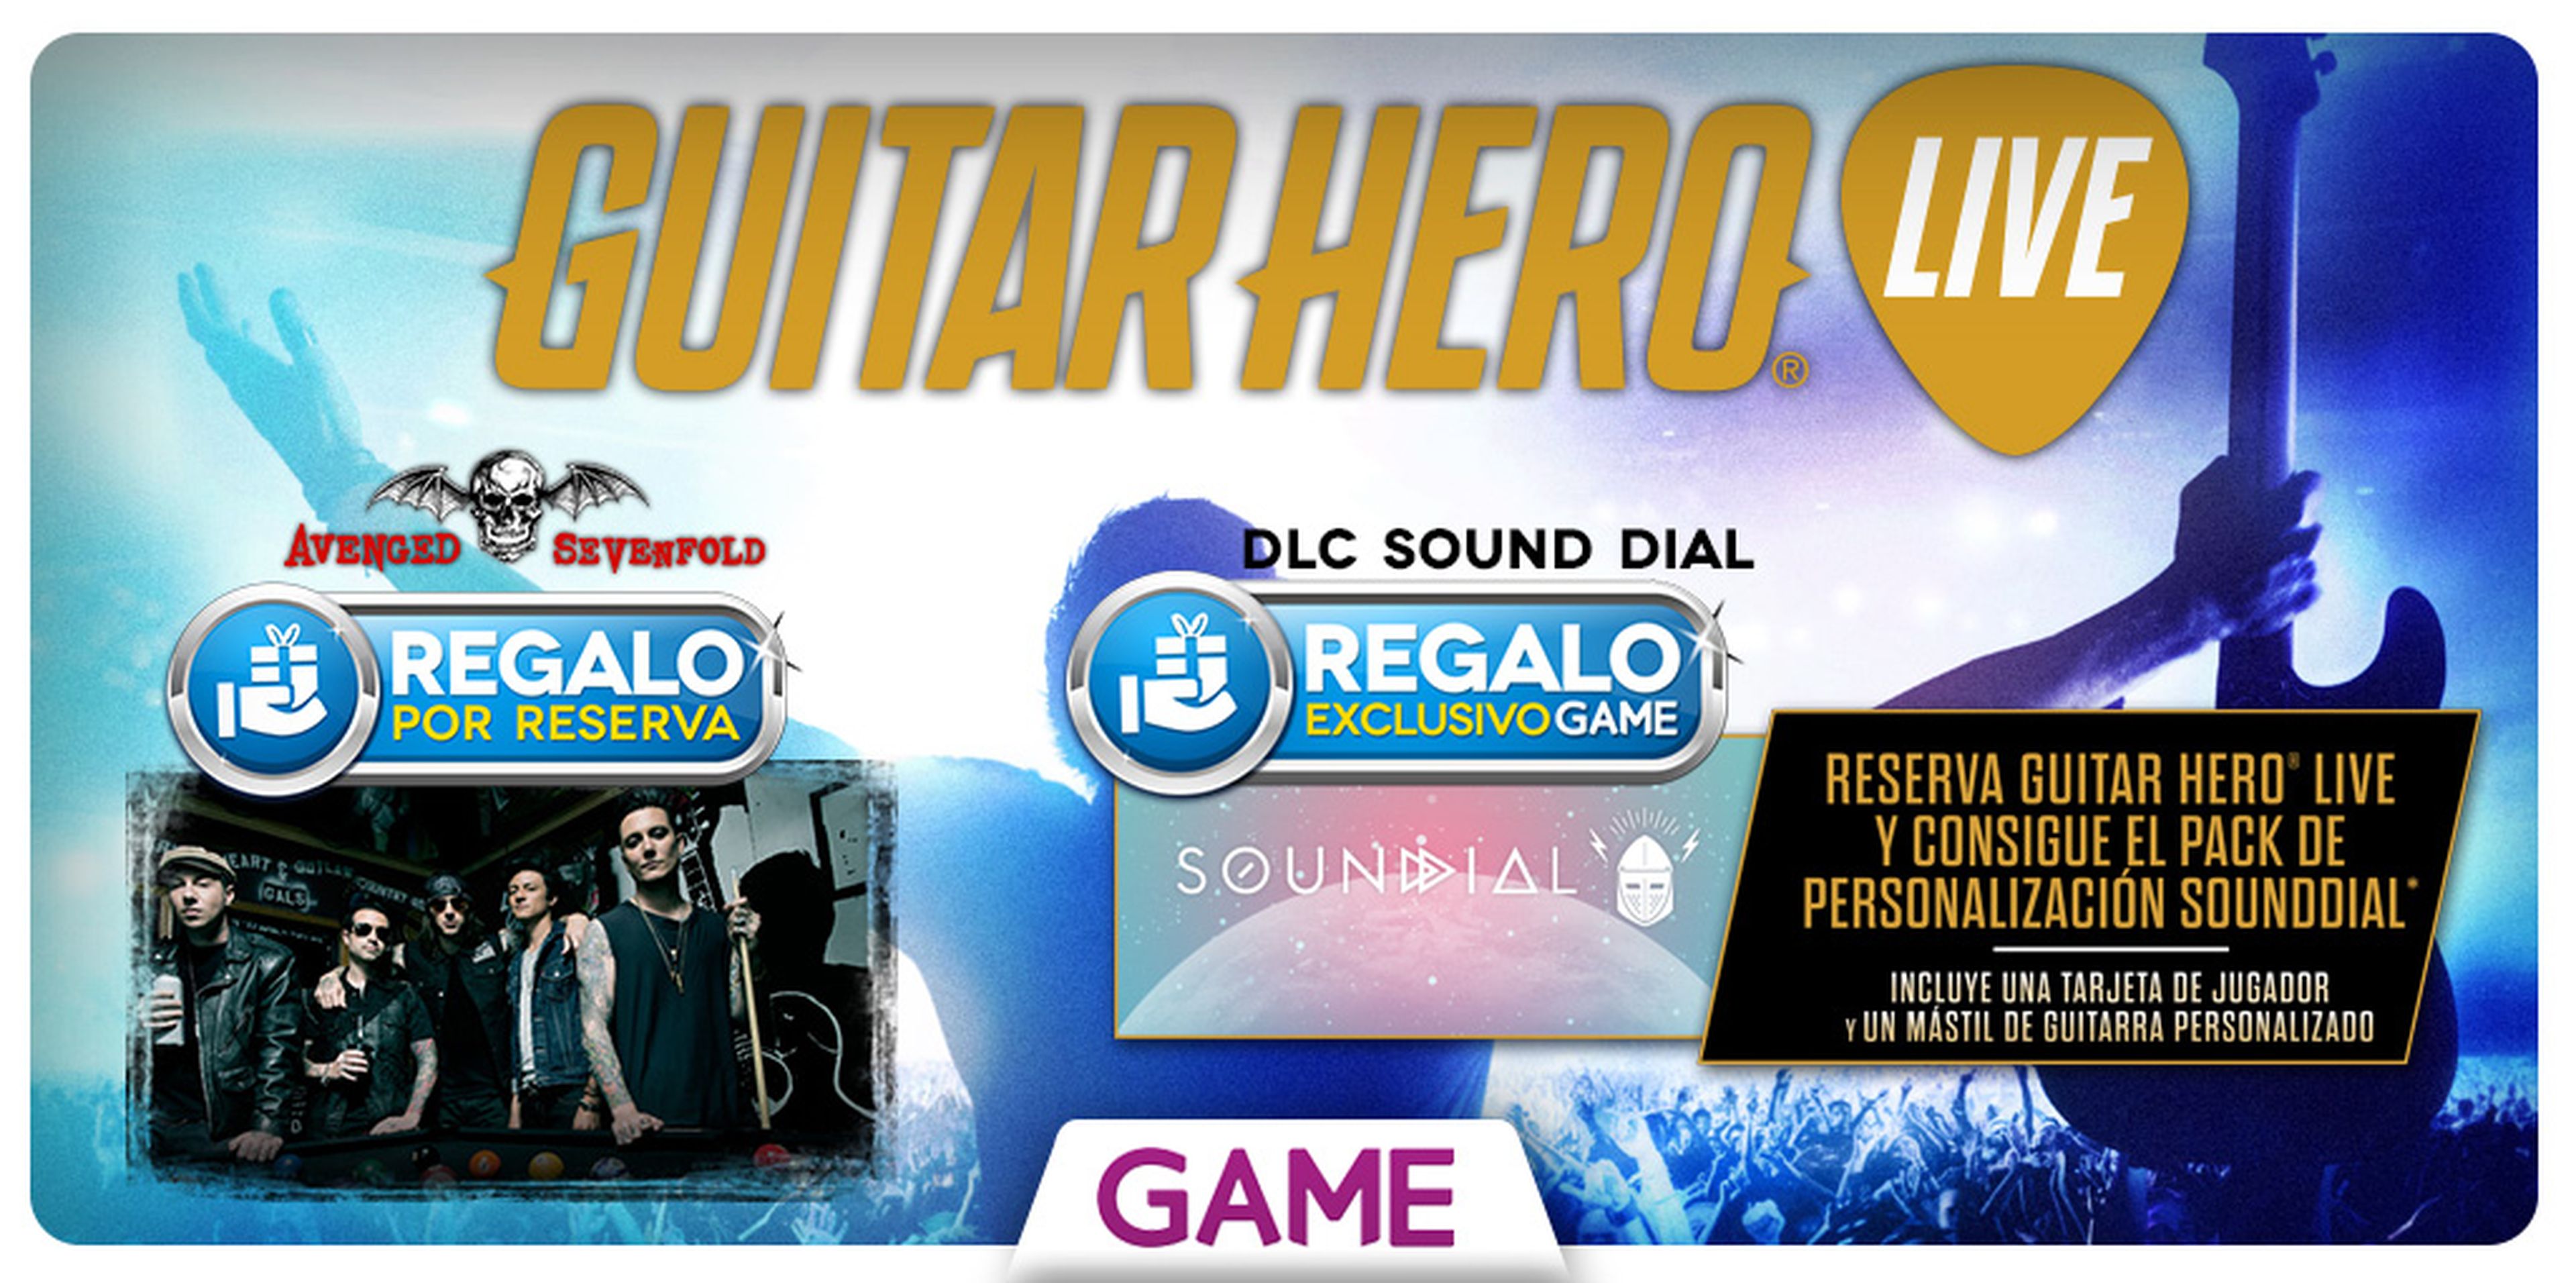 Guitar Hero Live, con regalo por reserva en GAME